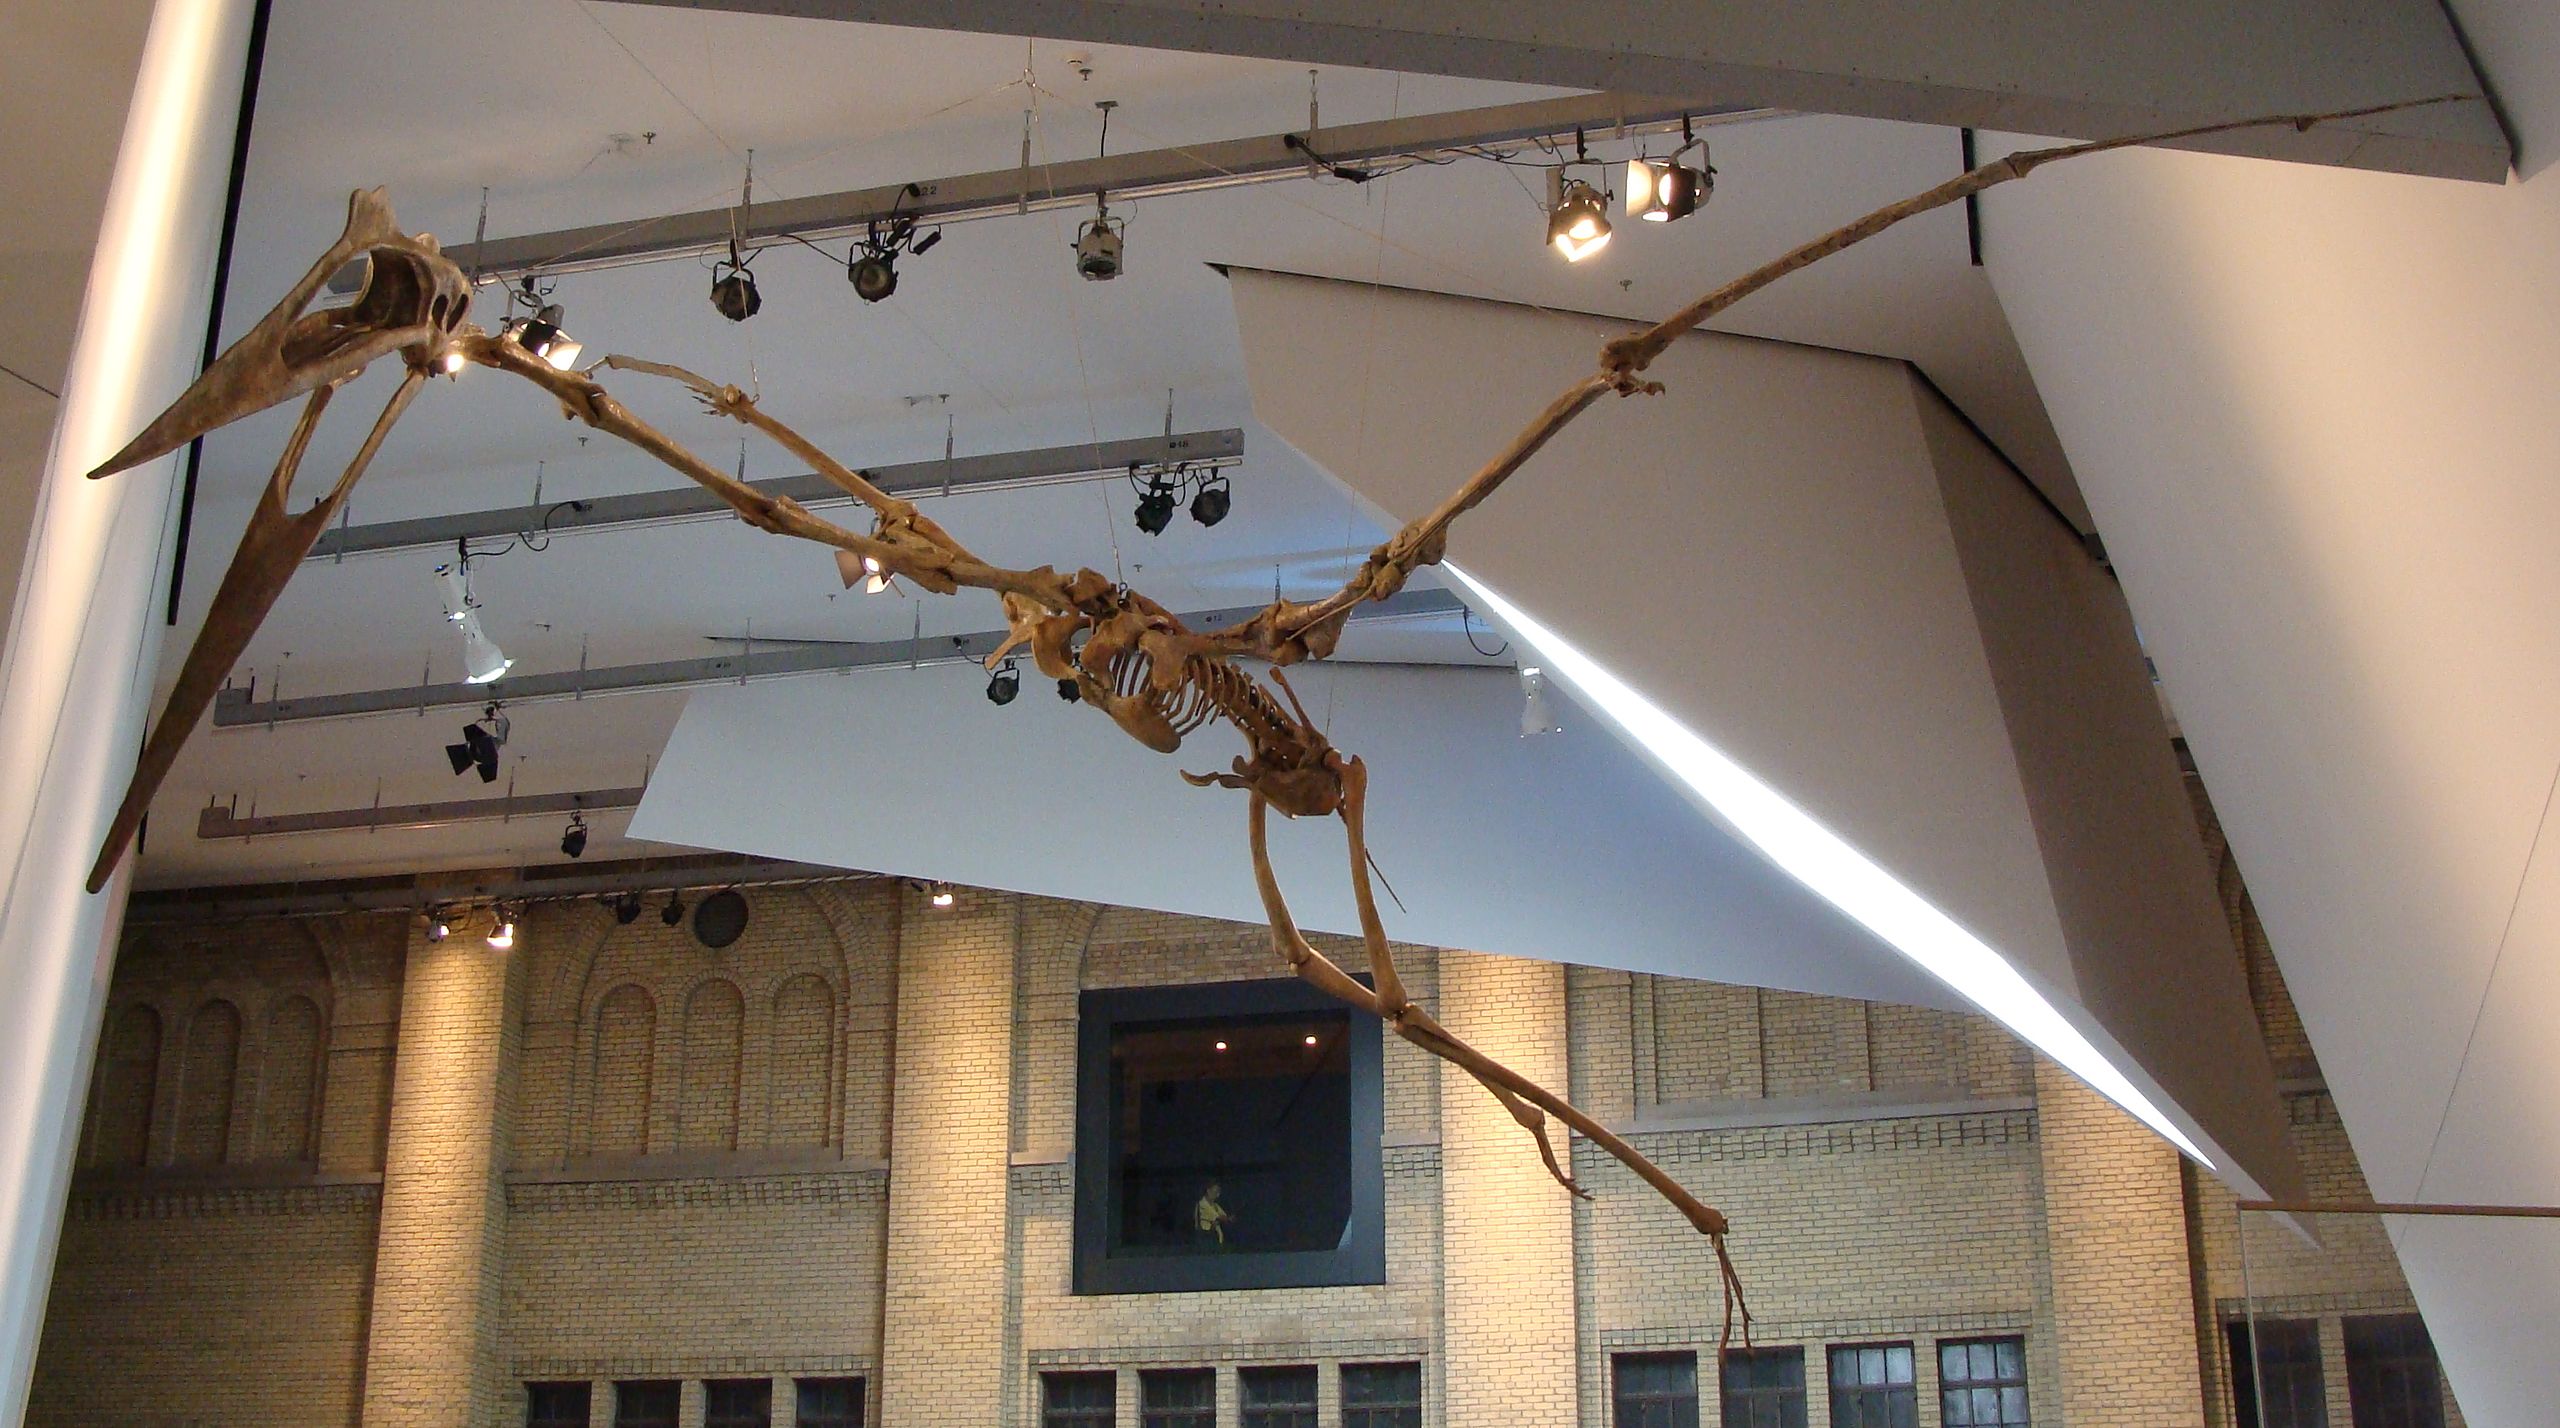 Rekonstruovaná kostra kvecalkoatla v Royal Ontario Museum (Královské ontarijské muzeum) v kanadském Torontu. O fyzikálních a biomechanických specifikách letu živých ptakoještěrů ještě stále mnoho informací nemáme, a tak dosud zůstává místo pro více č